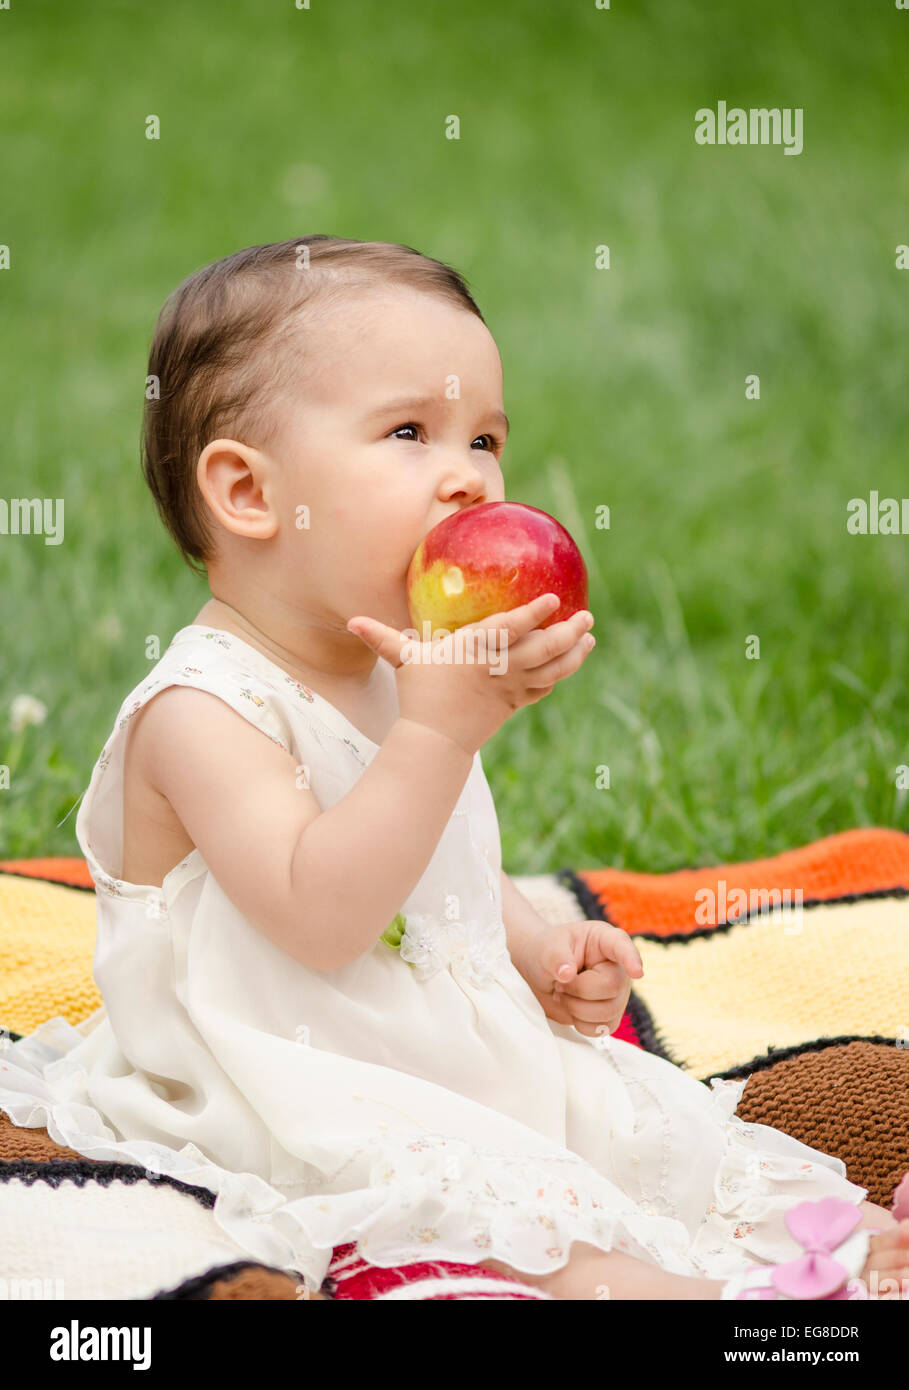 Niedliche kleine Mädchen essen einen roten Apfel Stockfoto